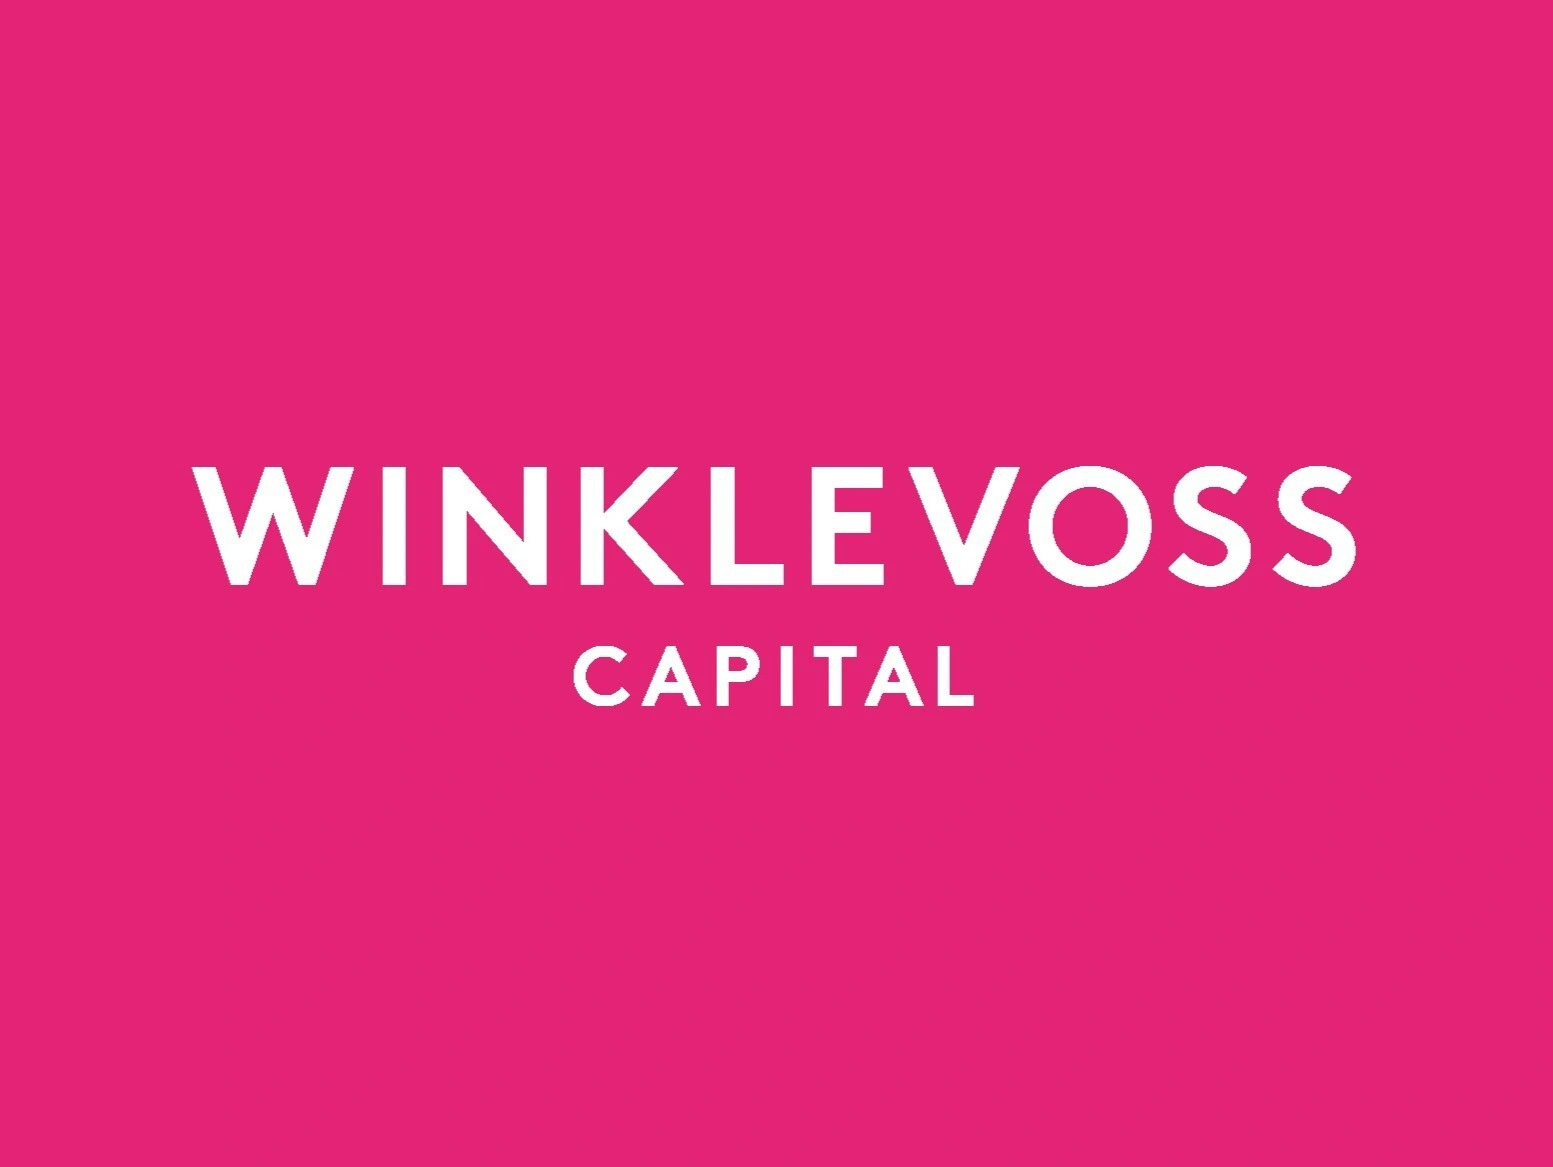 Winklevoss Capital Management